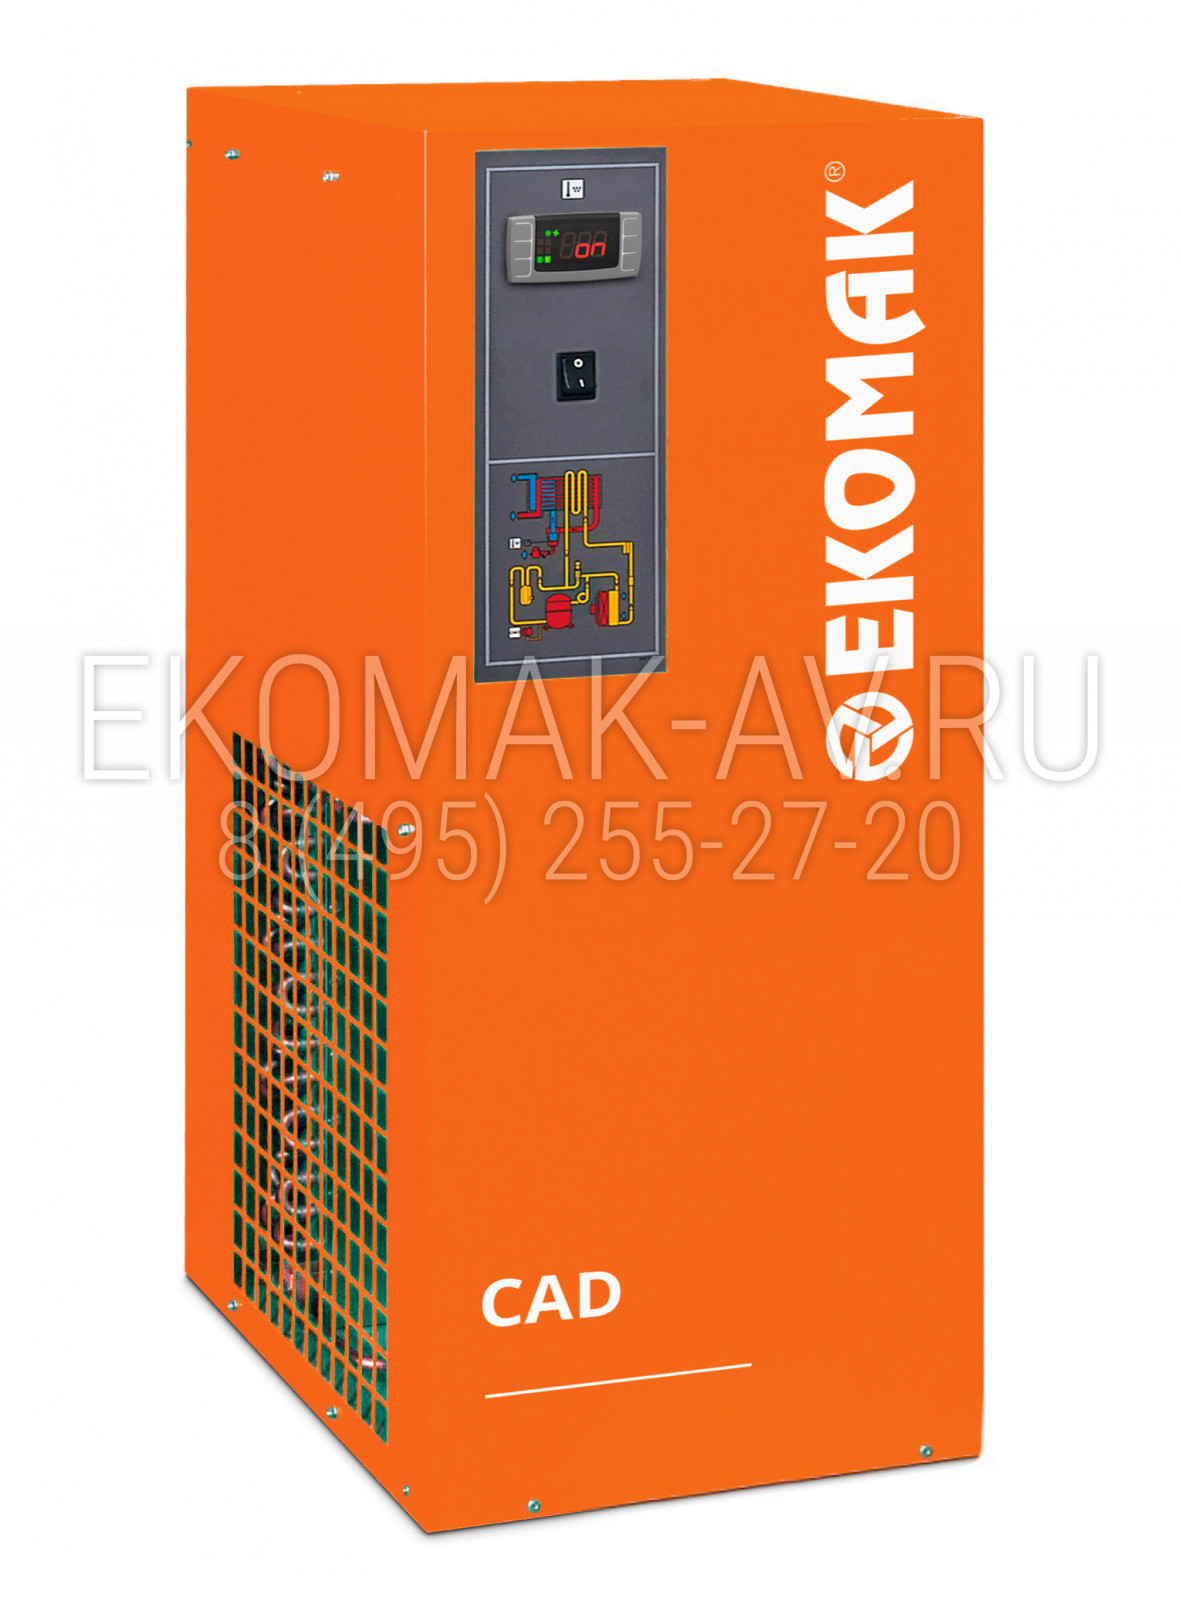 Рефрижераторный осушитель Ekomak CAD 53